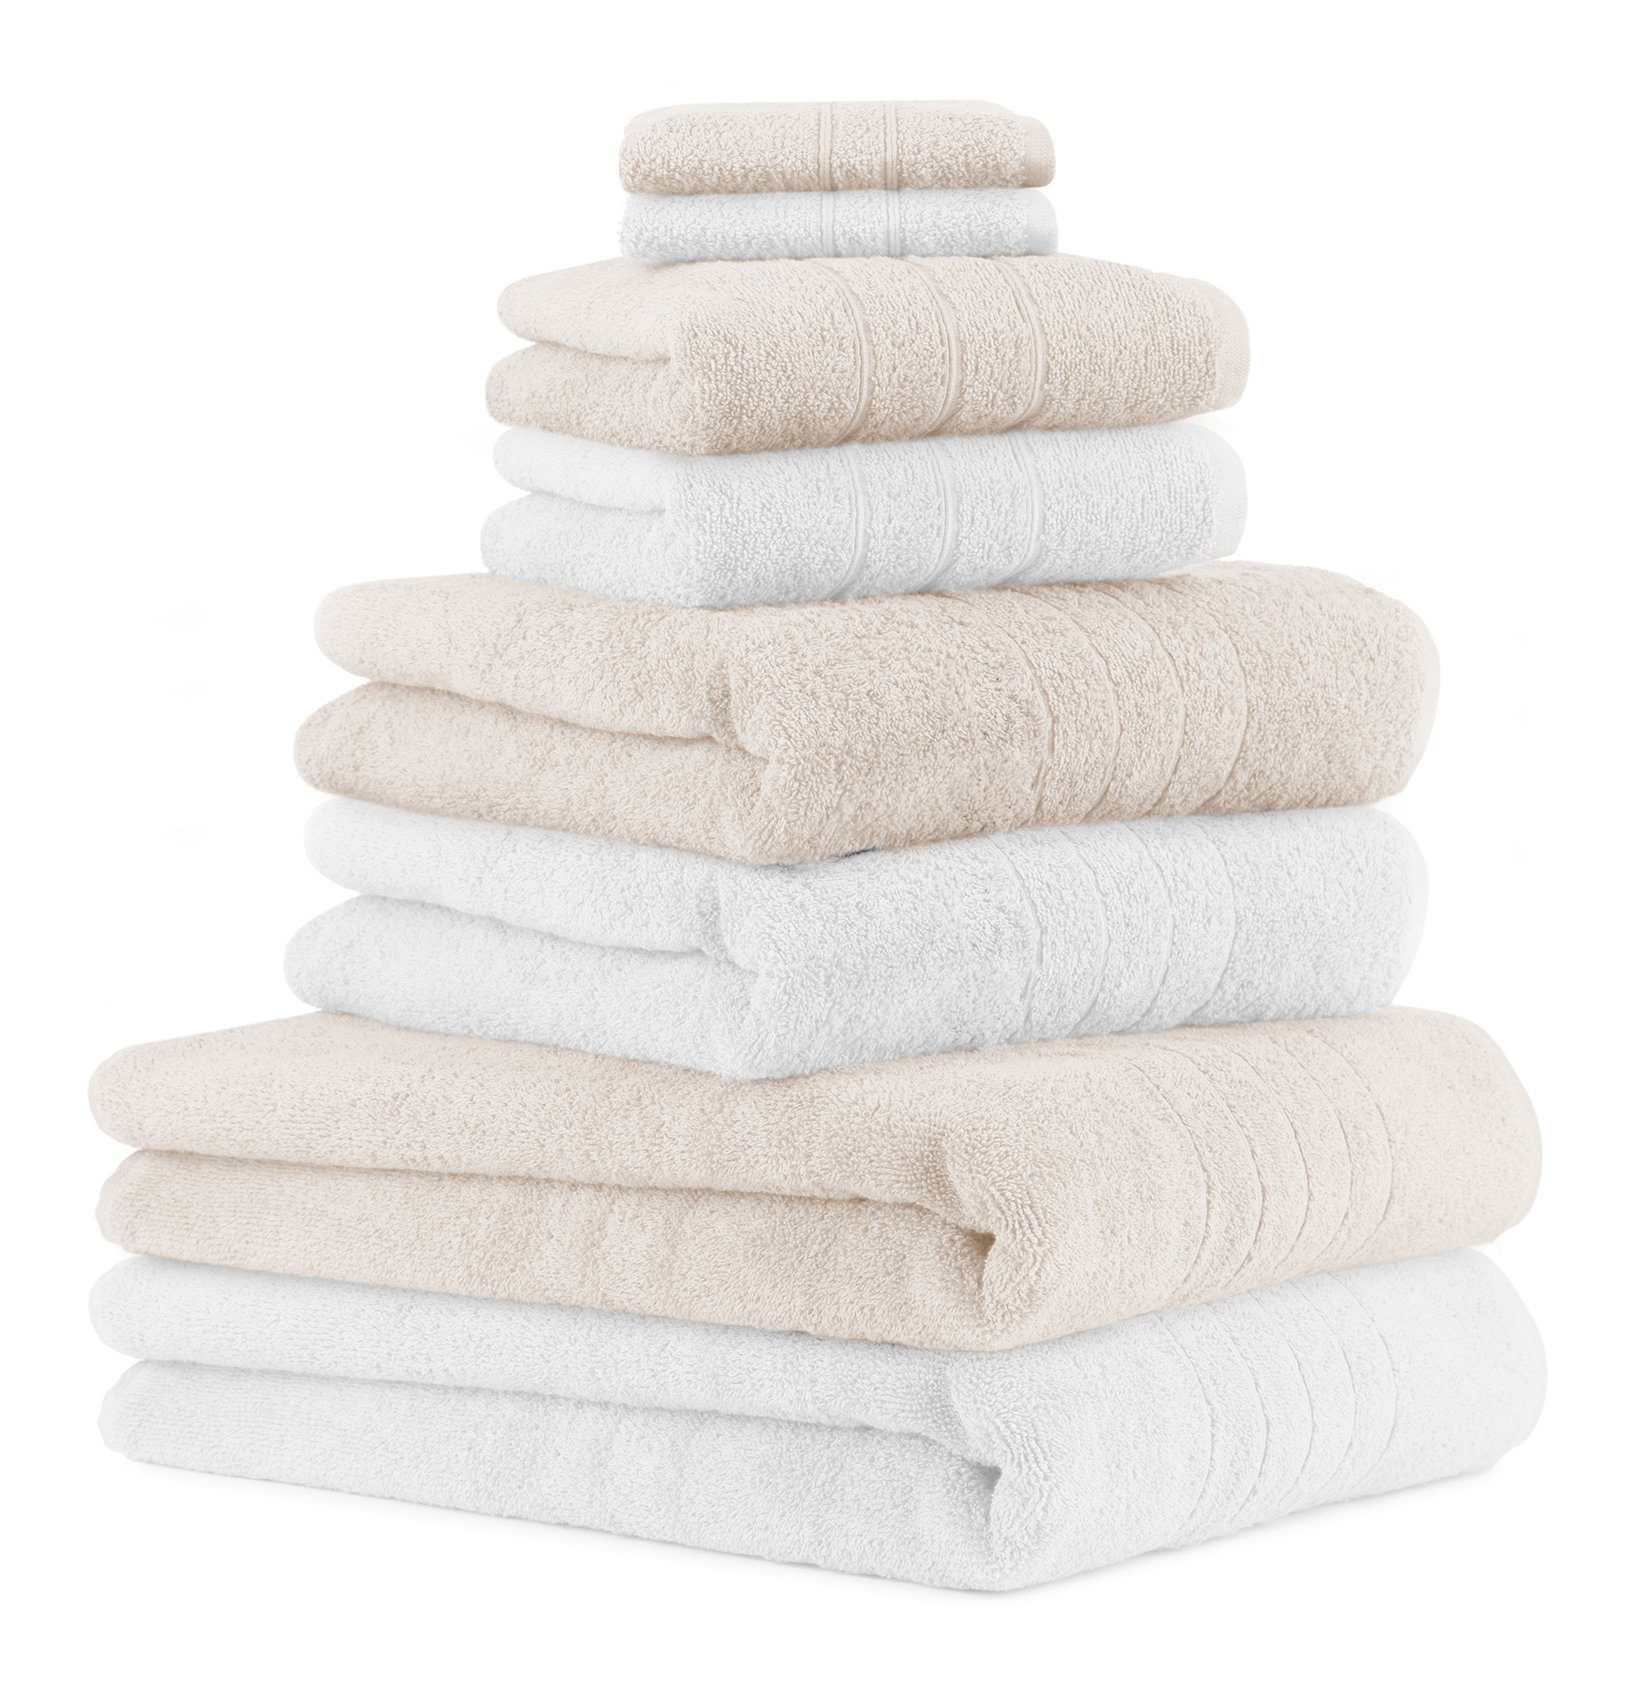 Betz Handtuch Set 8-TLG. Handtuch-Set Deluxe 100% Baumwolle 2 Badetücher 2  Duschtücher 2 Handtücher 2 Seiftücher Farbe weiß und Creme, 100% Baumwolle,  (8-tlg) | Handtuch-Sets